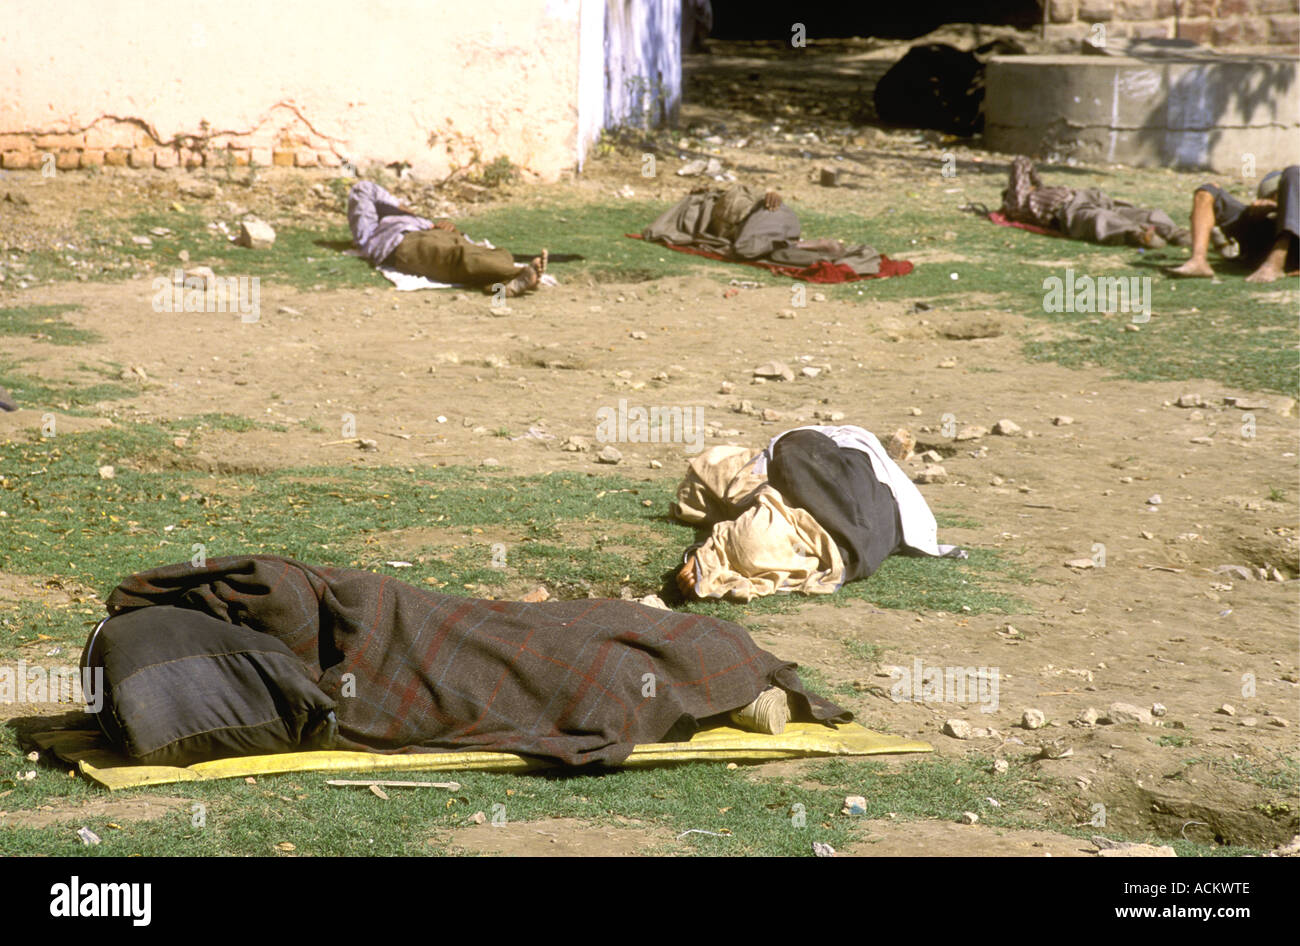 Les pauvres dorment dans la rue sur le côté d'une rue à Agra Uttar Pradesh Inde c'est à quelques kilomètres de l'hôtel Taj Mahal Banque D'Images